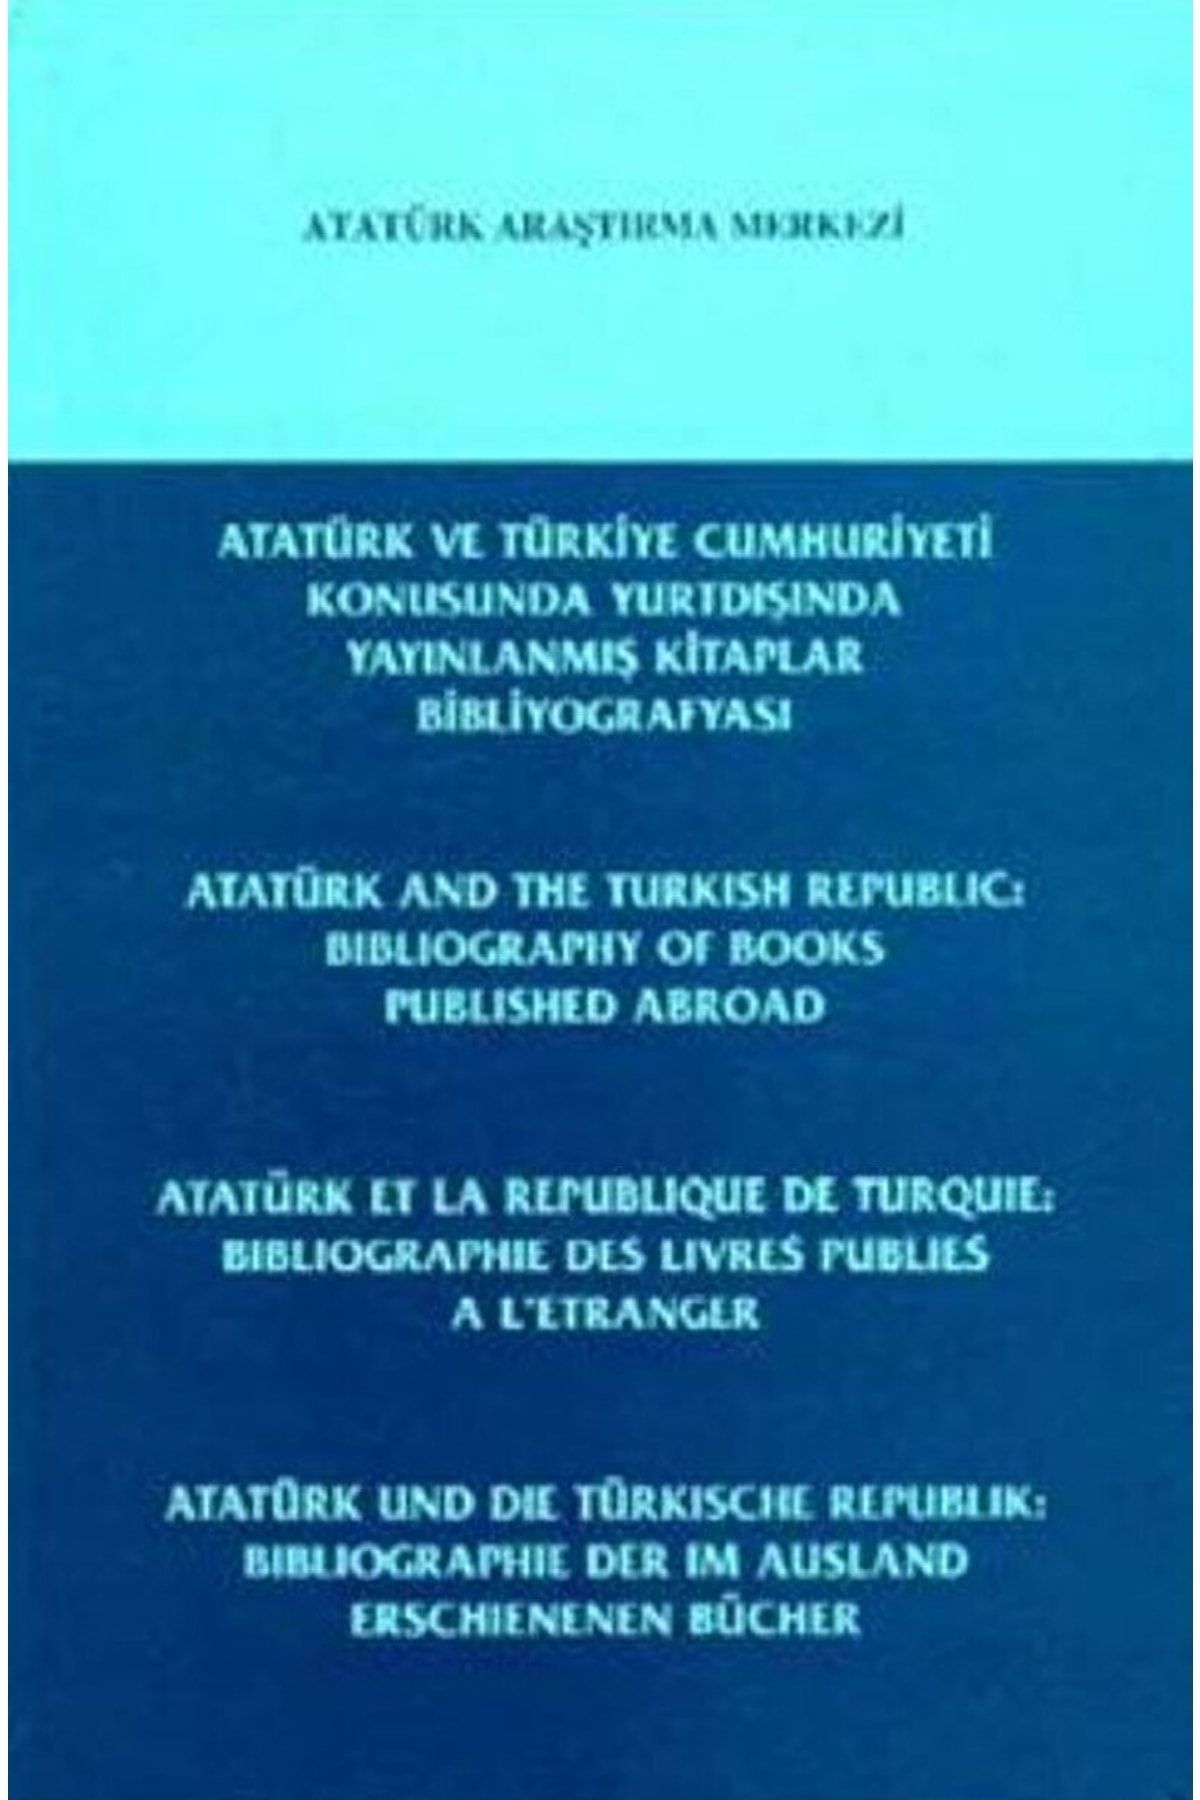 Atatürk Araştırma Merkezi Atatürk Ve Türkiye Cumhuriyeti Konusunda Yurtdışında Yayınlanmış Kitaplar Bibliyografyası